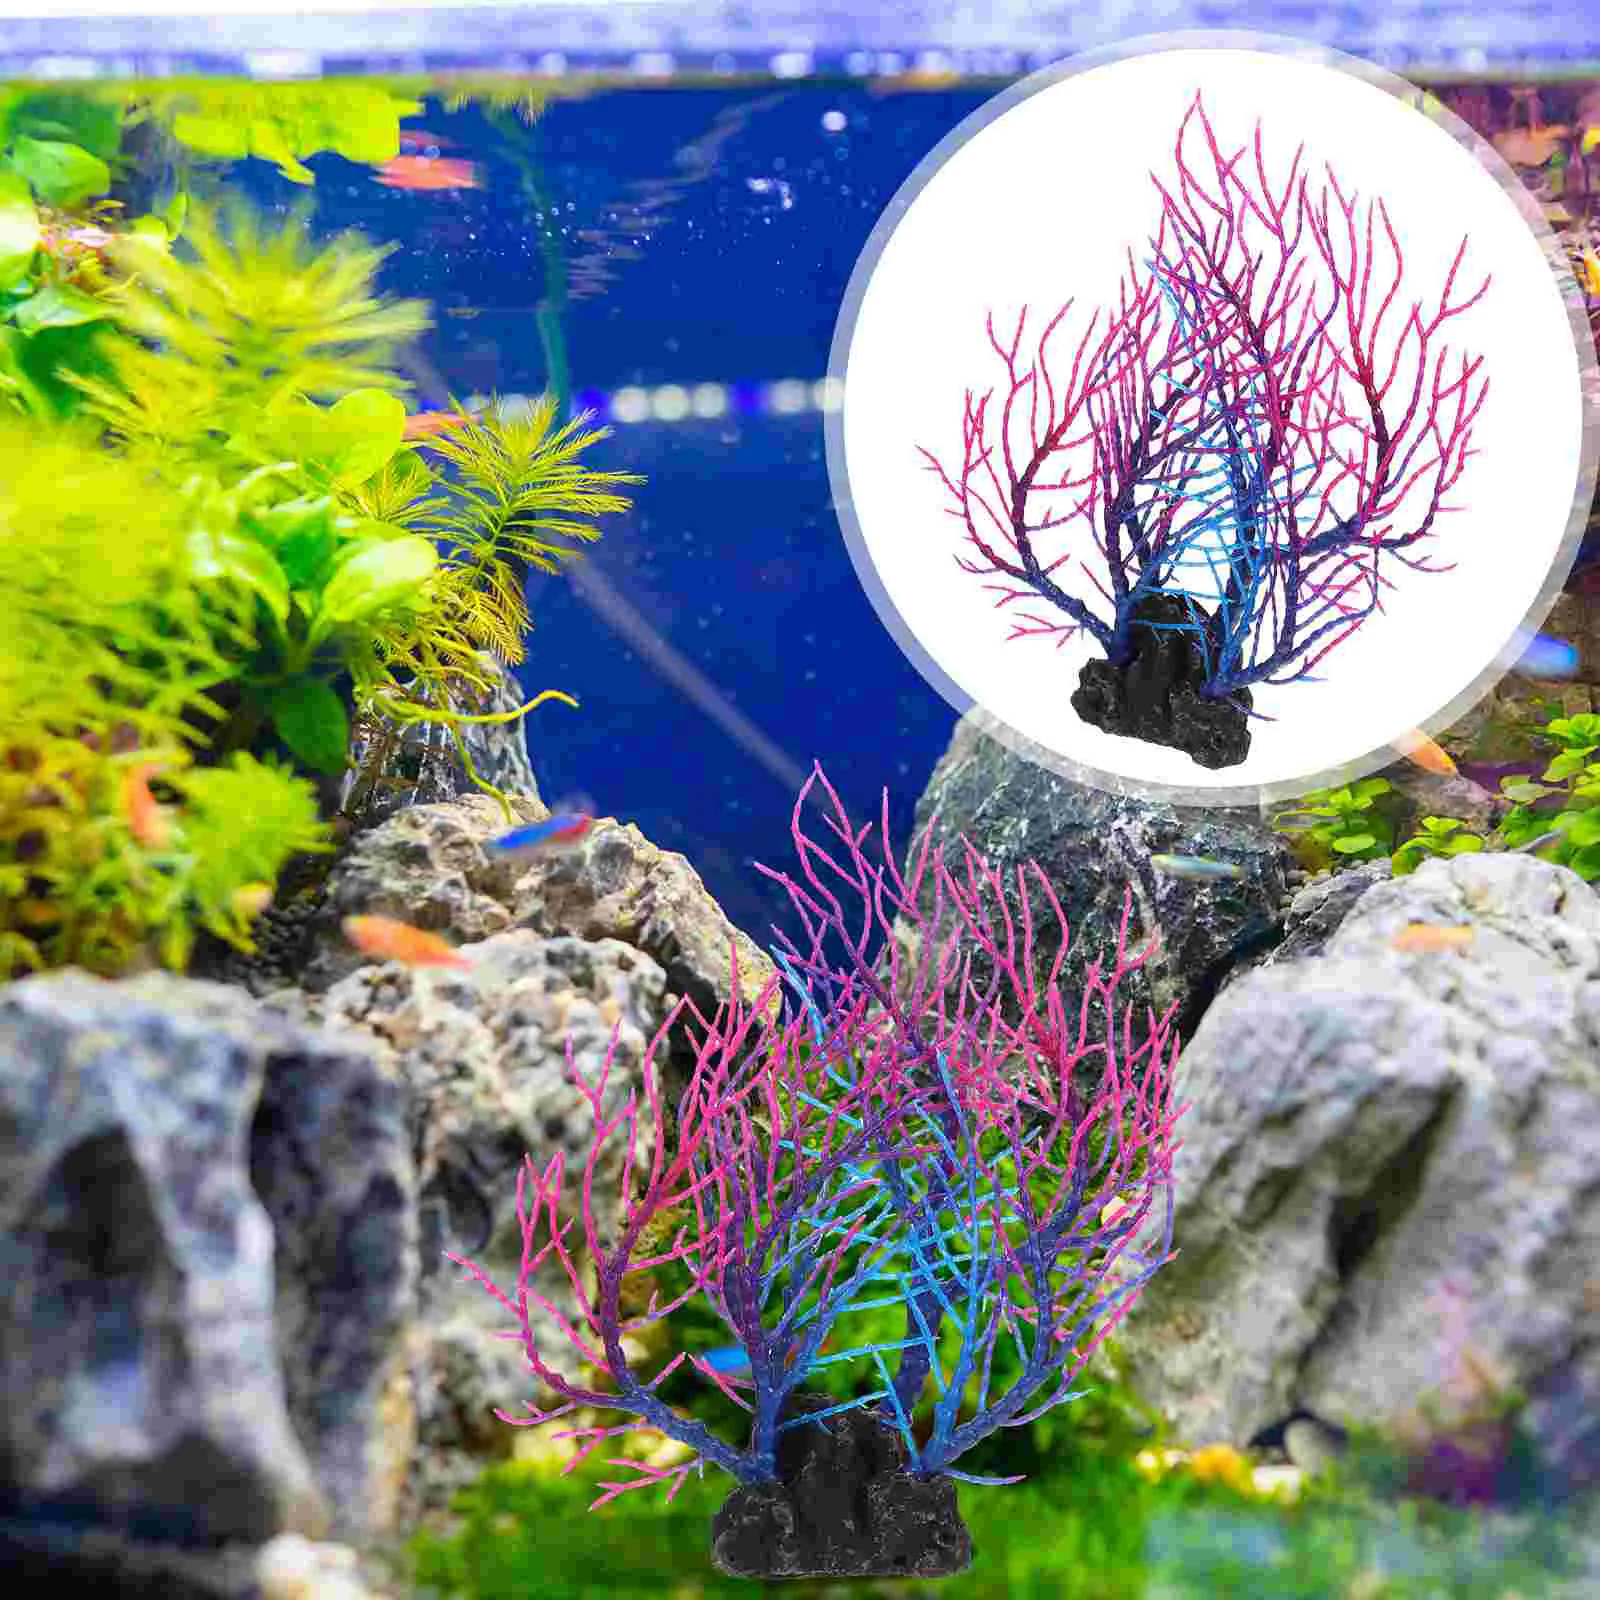 

Aquarium Landscaping Coral Faux Plants Fish Tank Accessories Aquatic Decor Resin Adornment Decorative Decorations